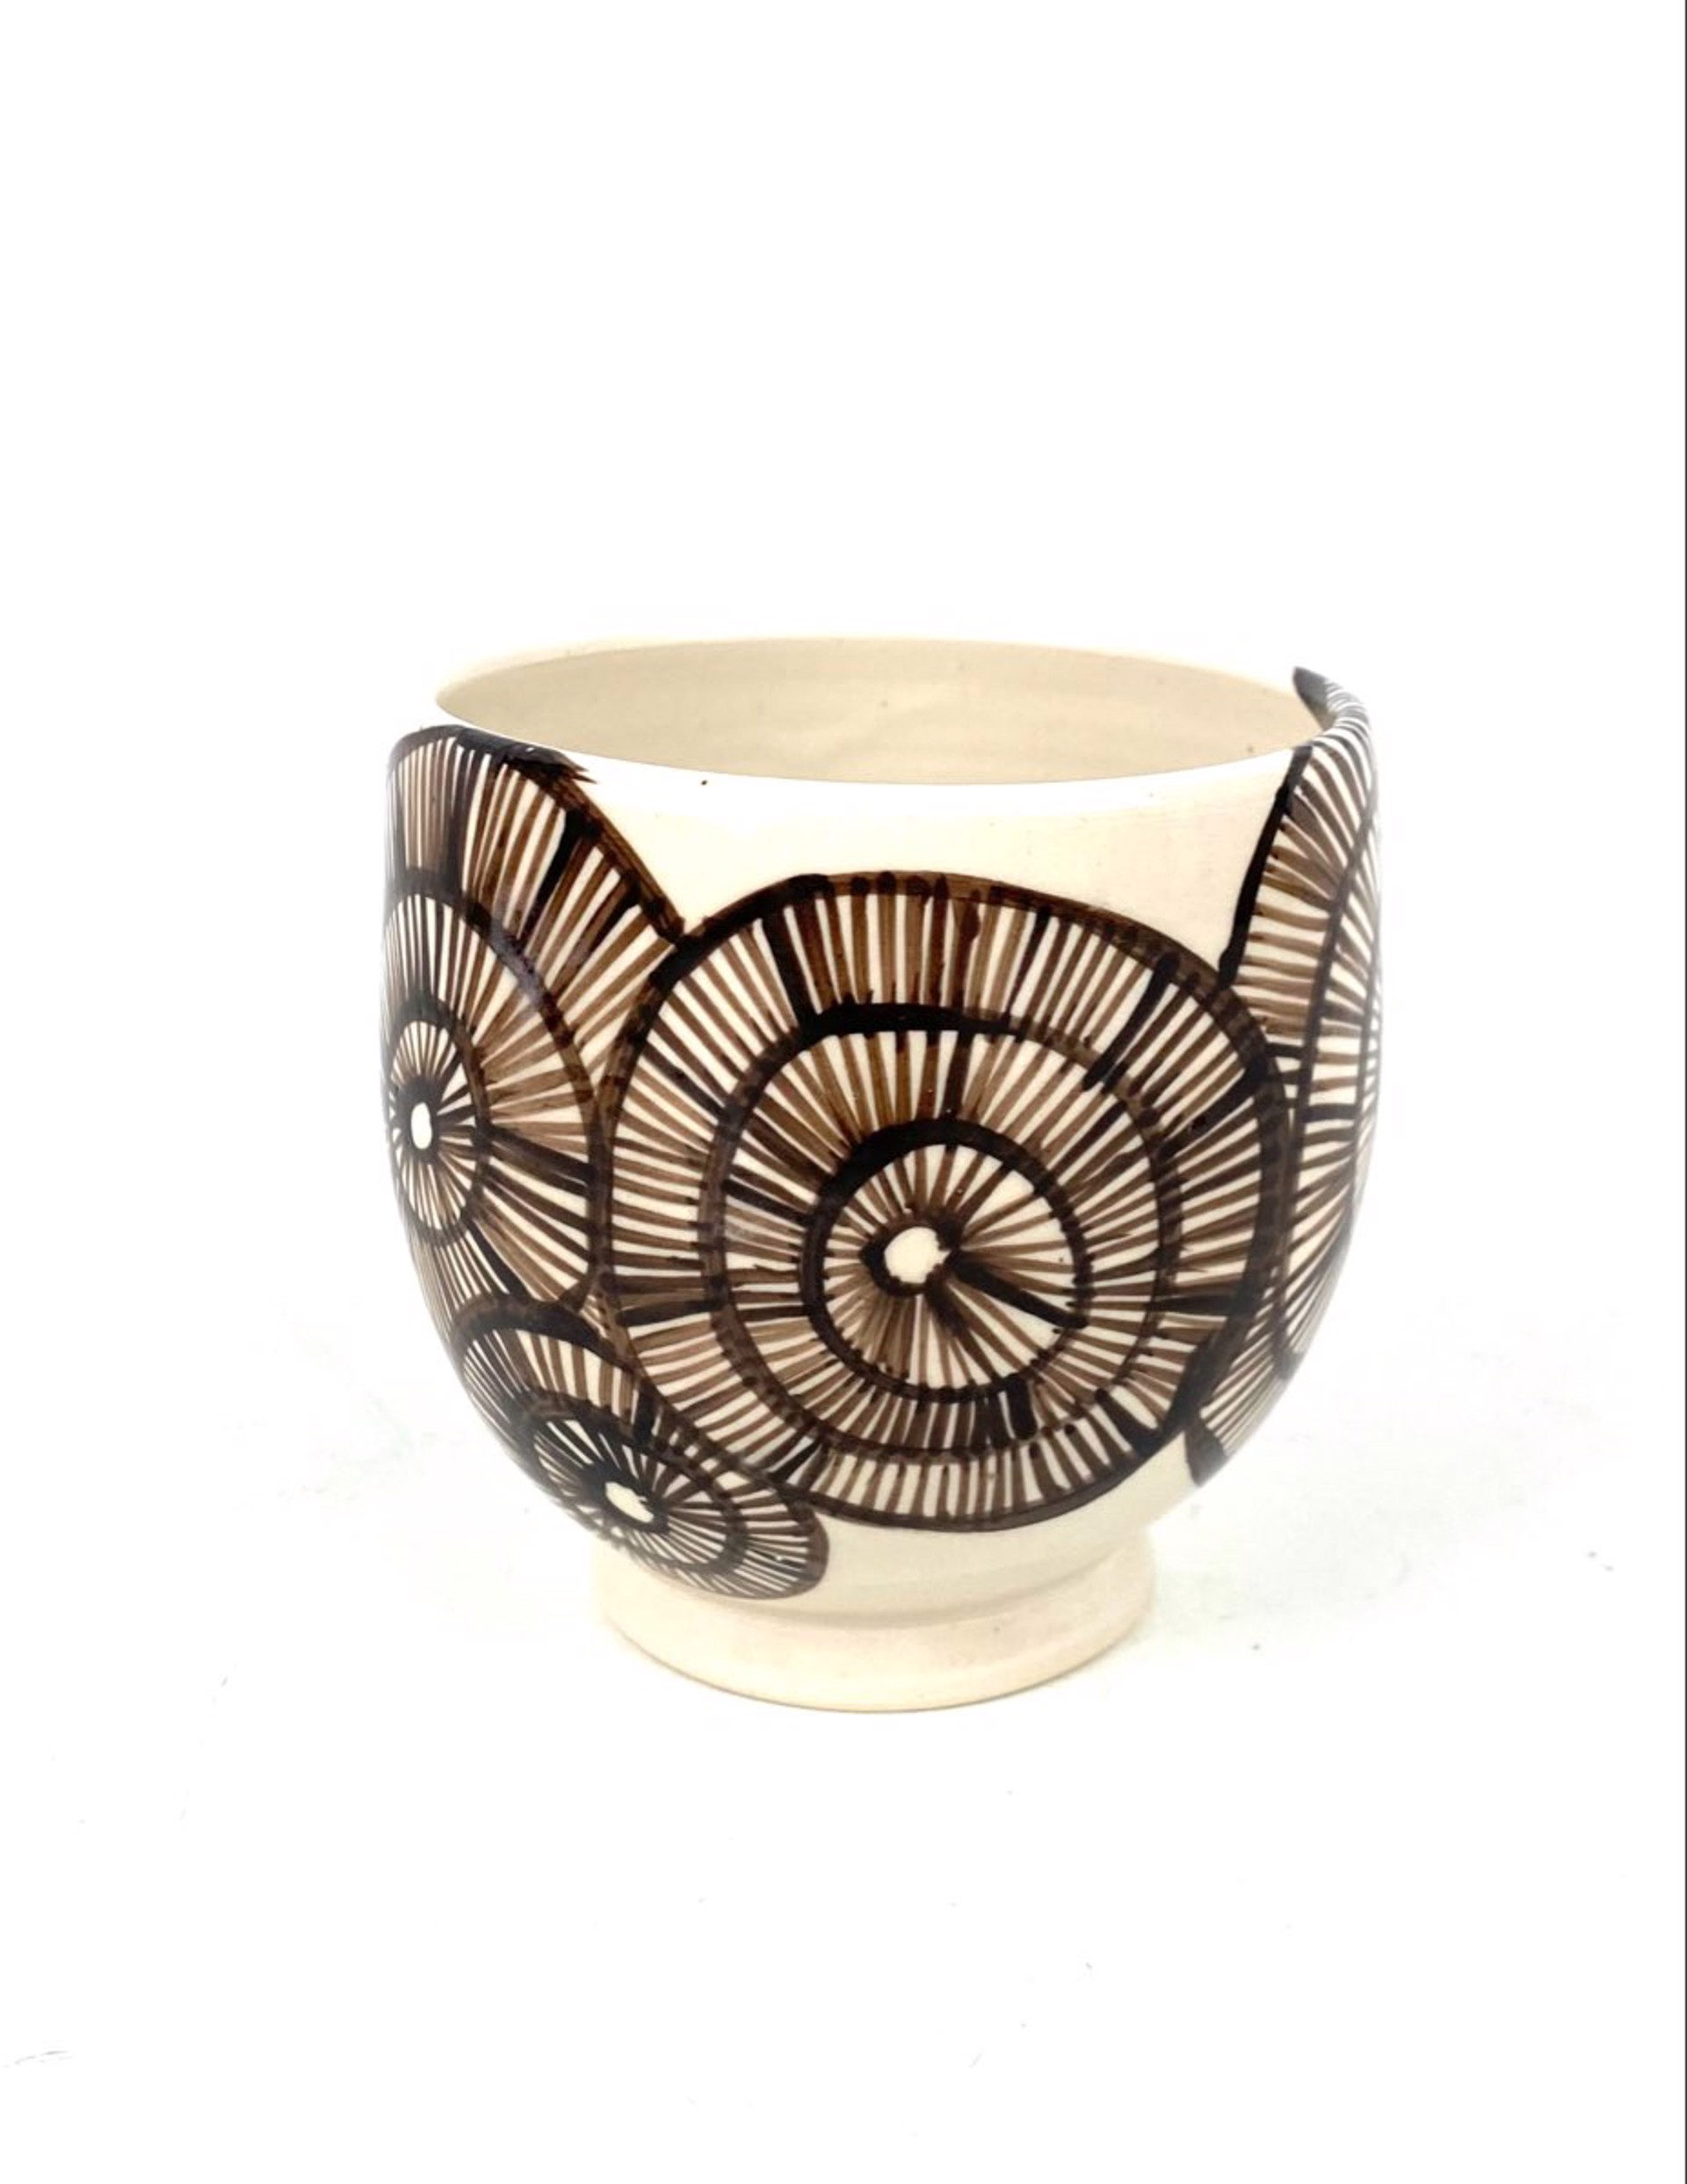 Cup by Mary Lynn Portera